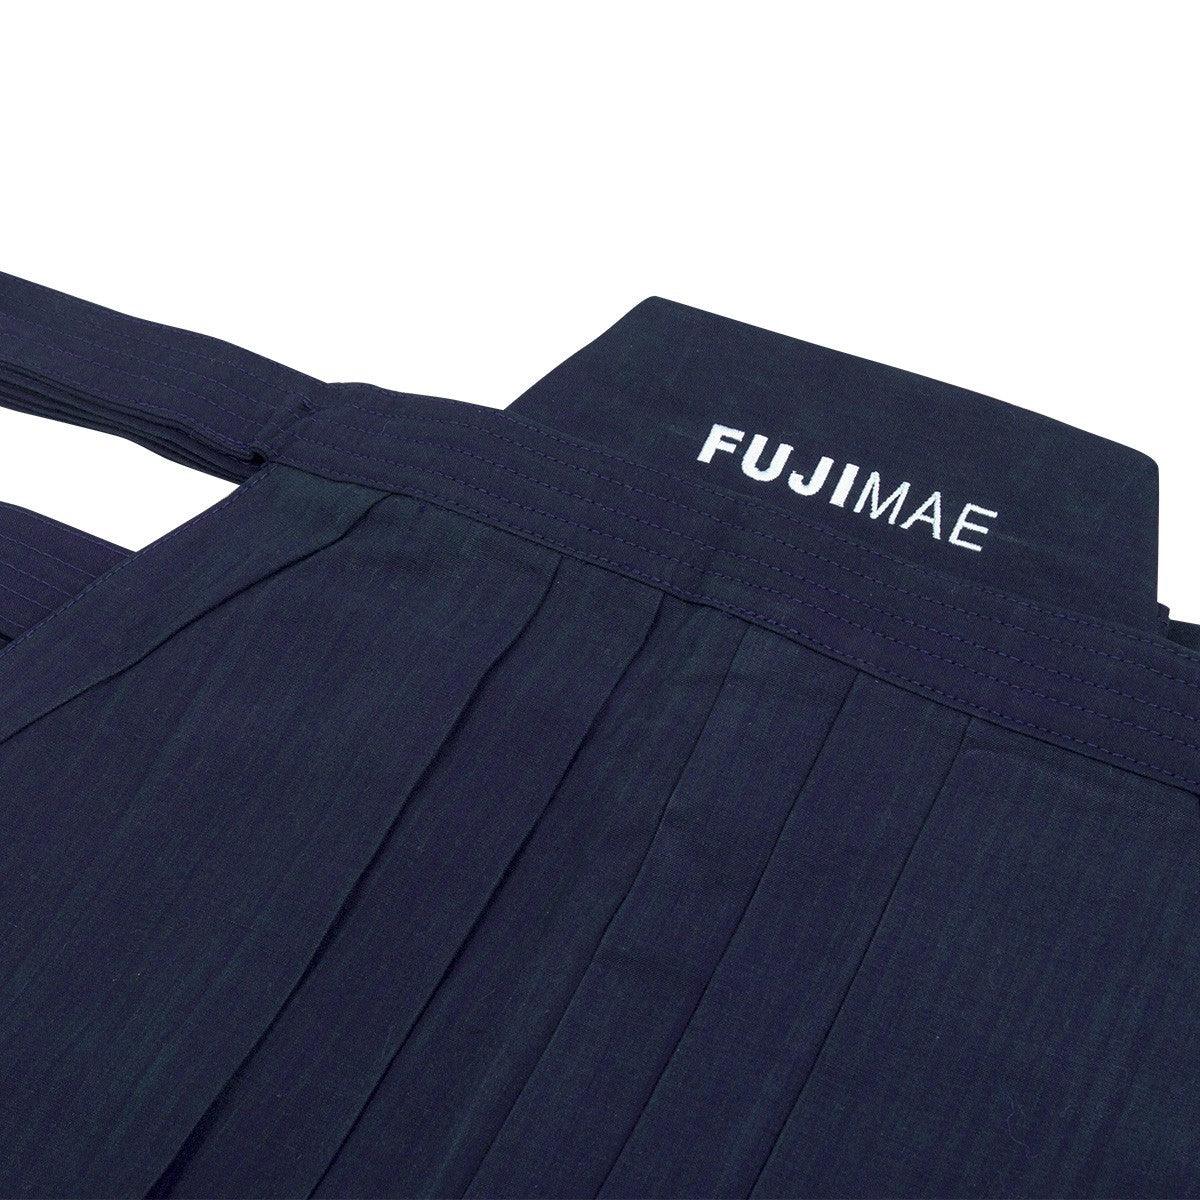 Hakama coton qualité supérieure - Fuji Mae 11132